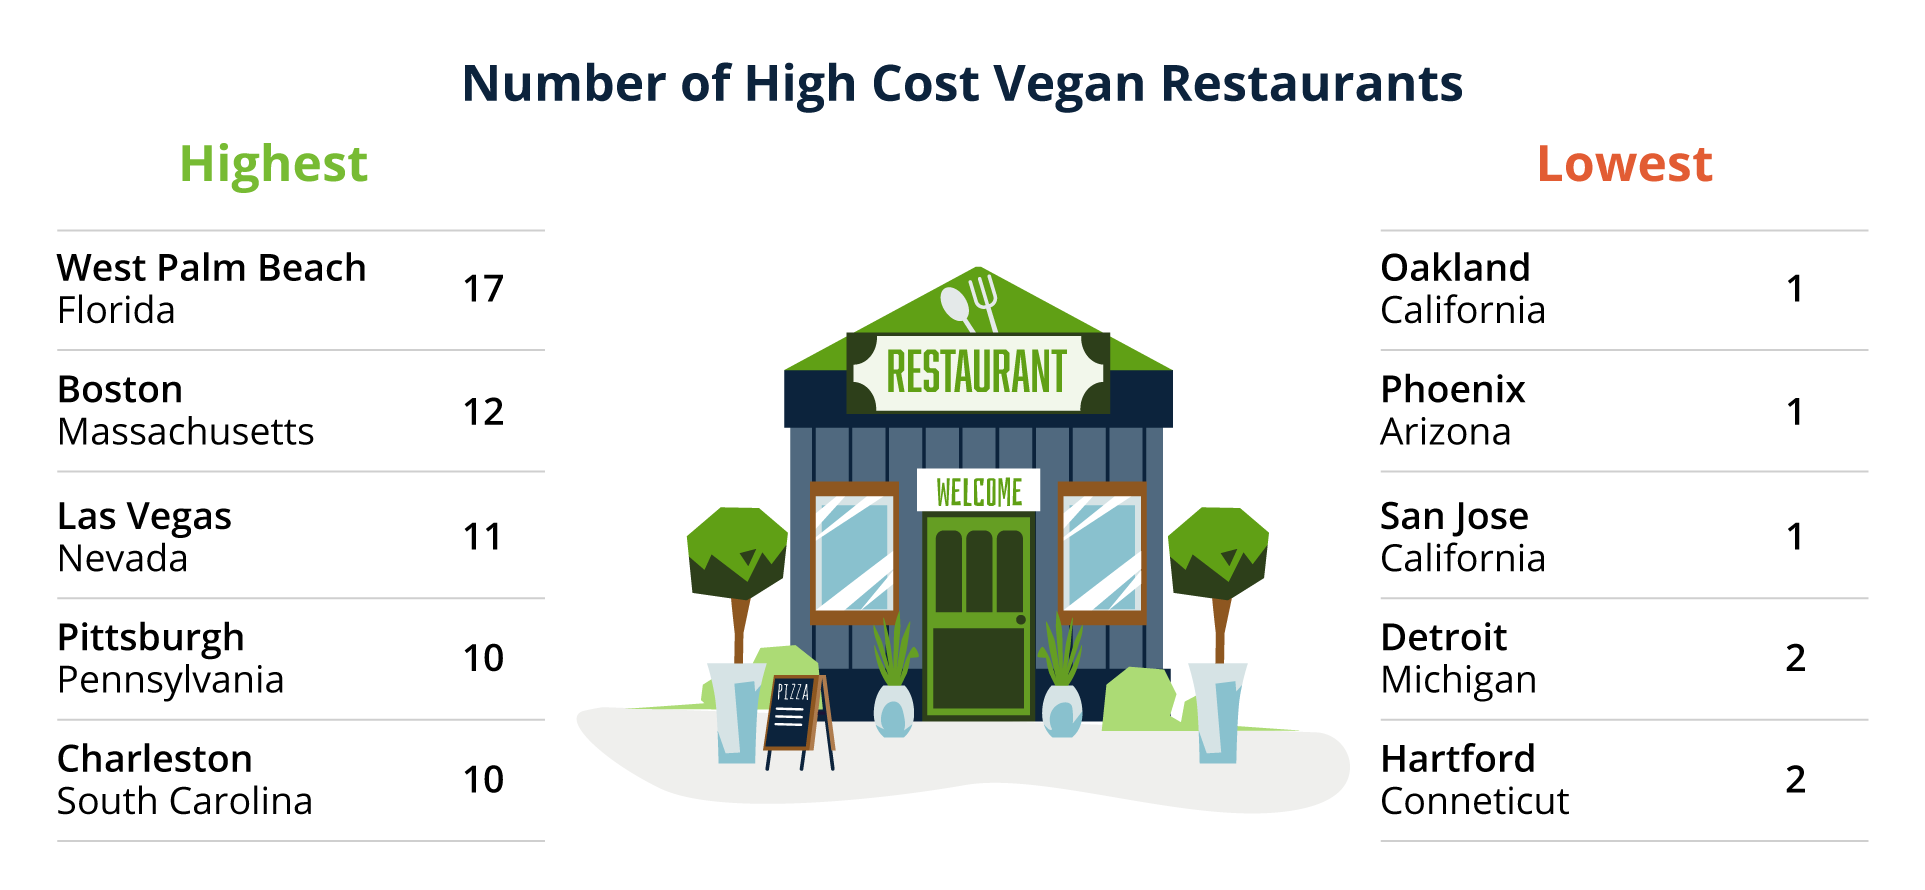 Number of High Cost Vegan Restaurants